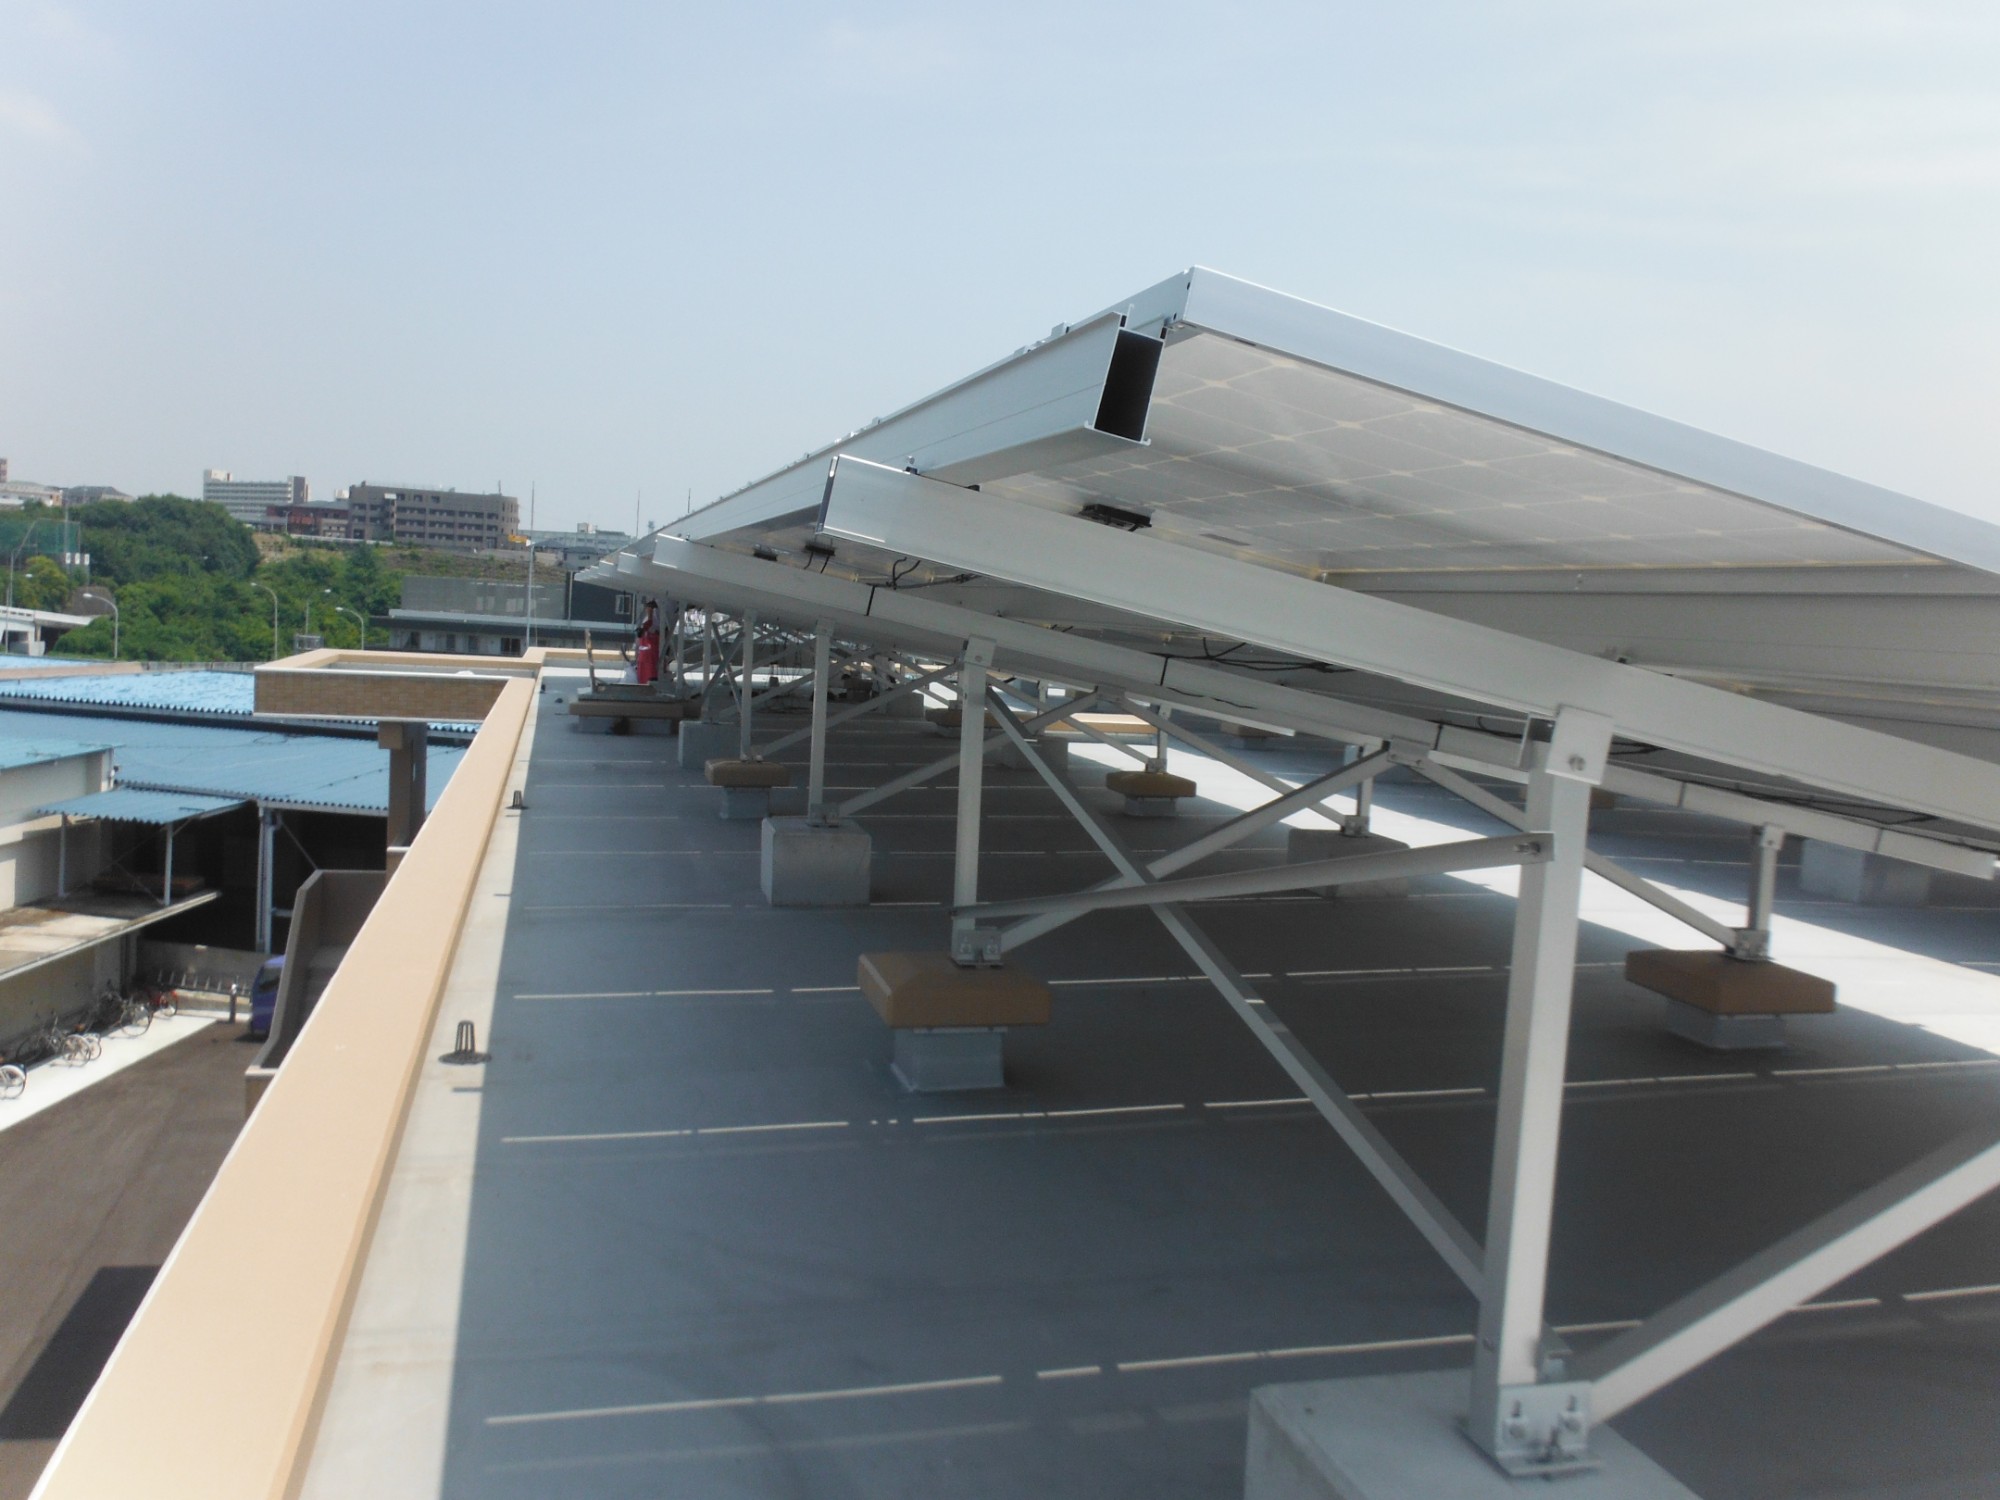 주문 평평한 지붕 태양열 건 드리는 시스템,평평한 지붕 태양열 건 드리는 시스템 가격,평평한 지붕 태양열 건 드리는 시스템 브랜드,평평한 지붕 태양열 건 드리는 시스템 제조업체,평평한 지붕 태양열 건 드리는 시스템 인용,평평한 지붕 태양열 건 드리는 시스템 회사,